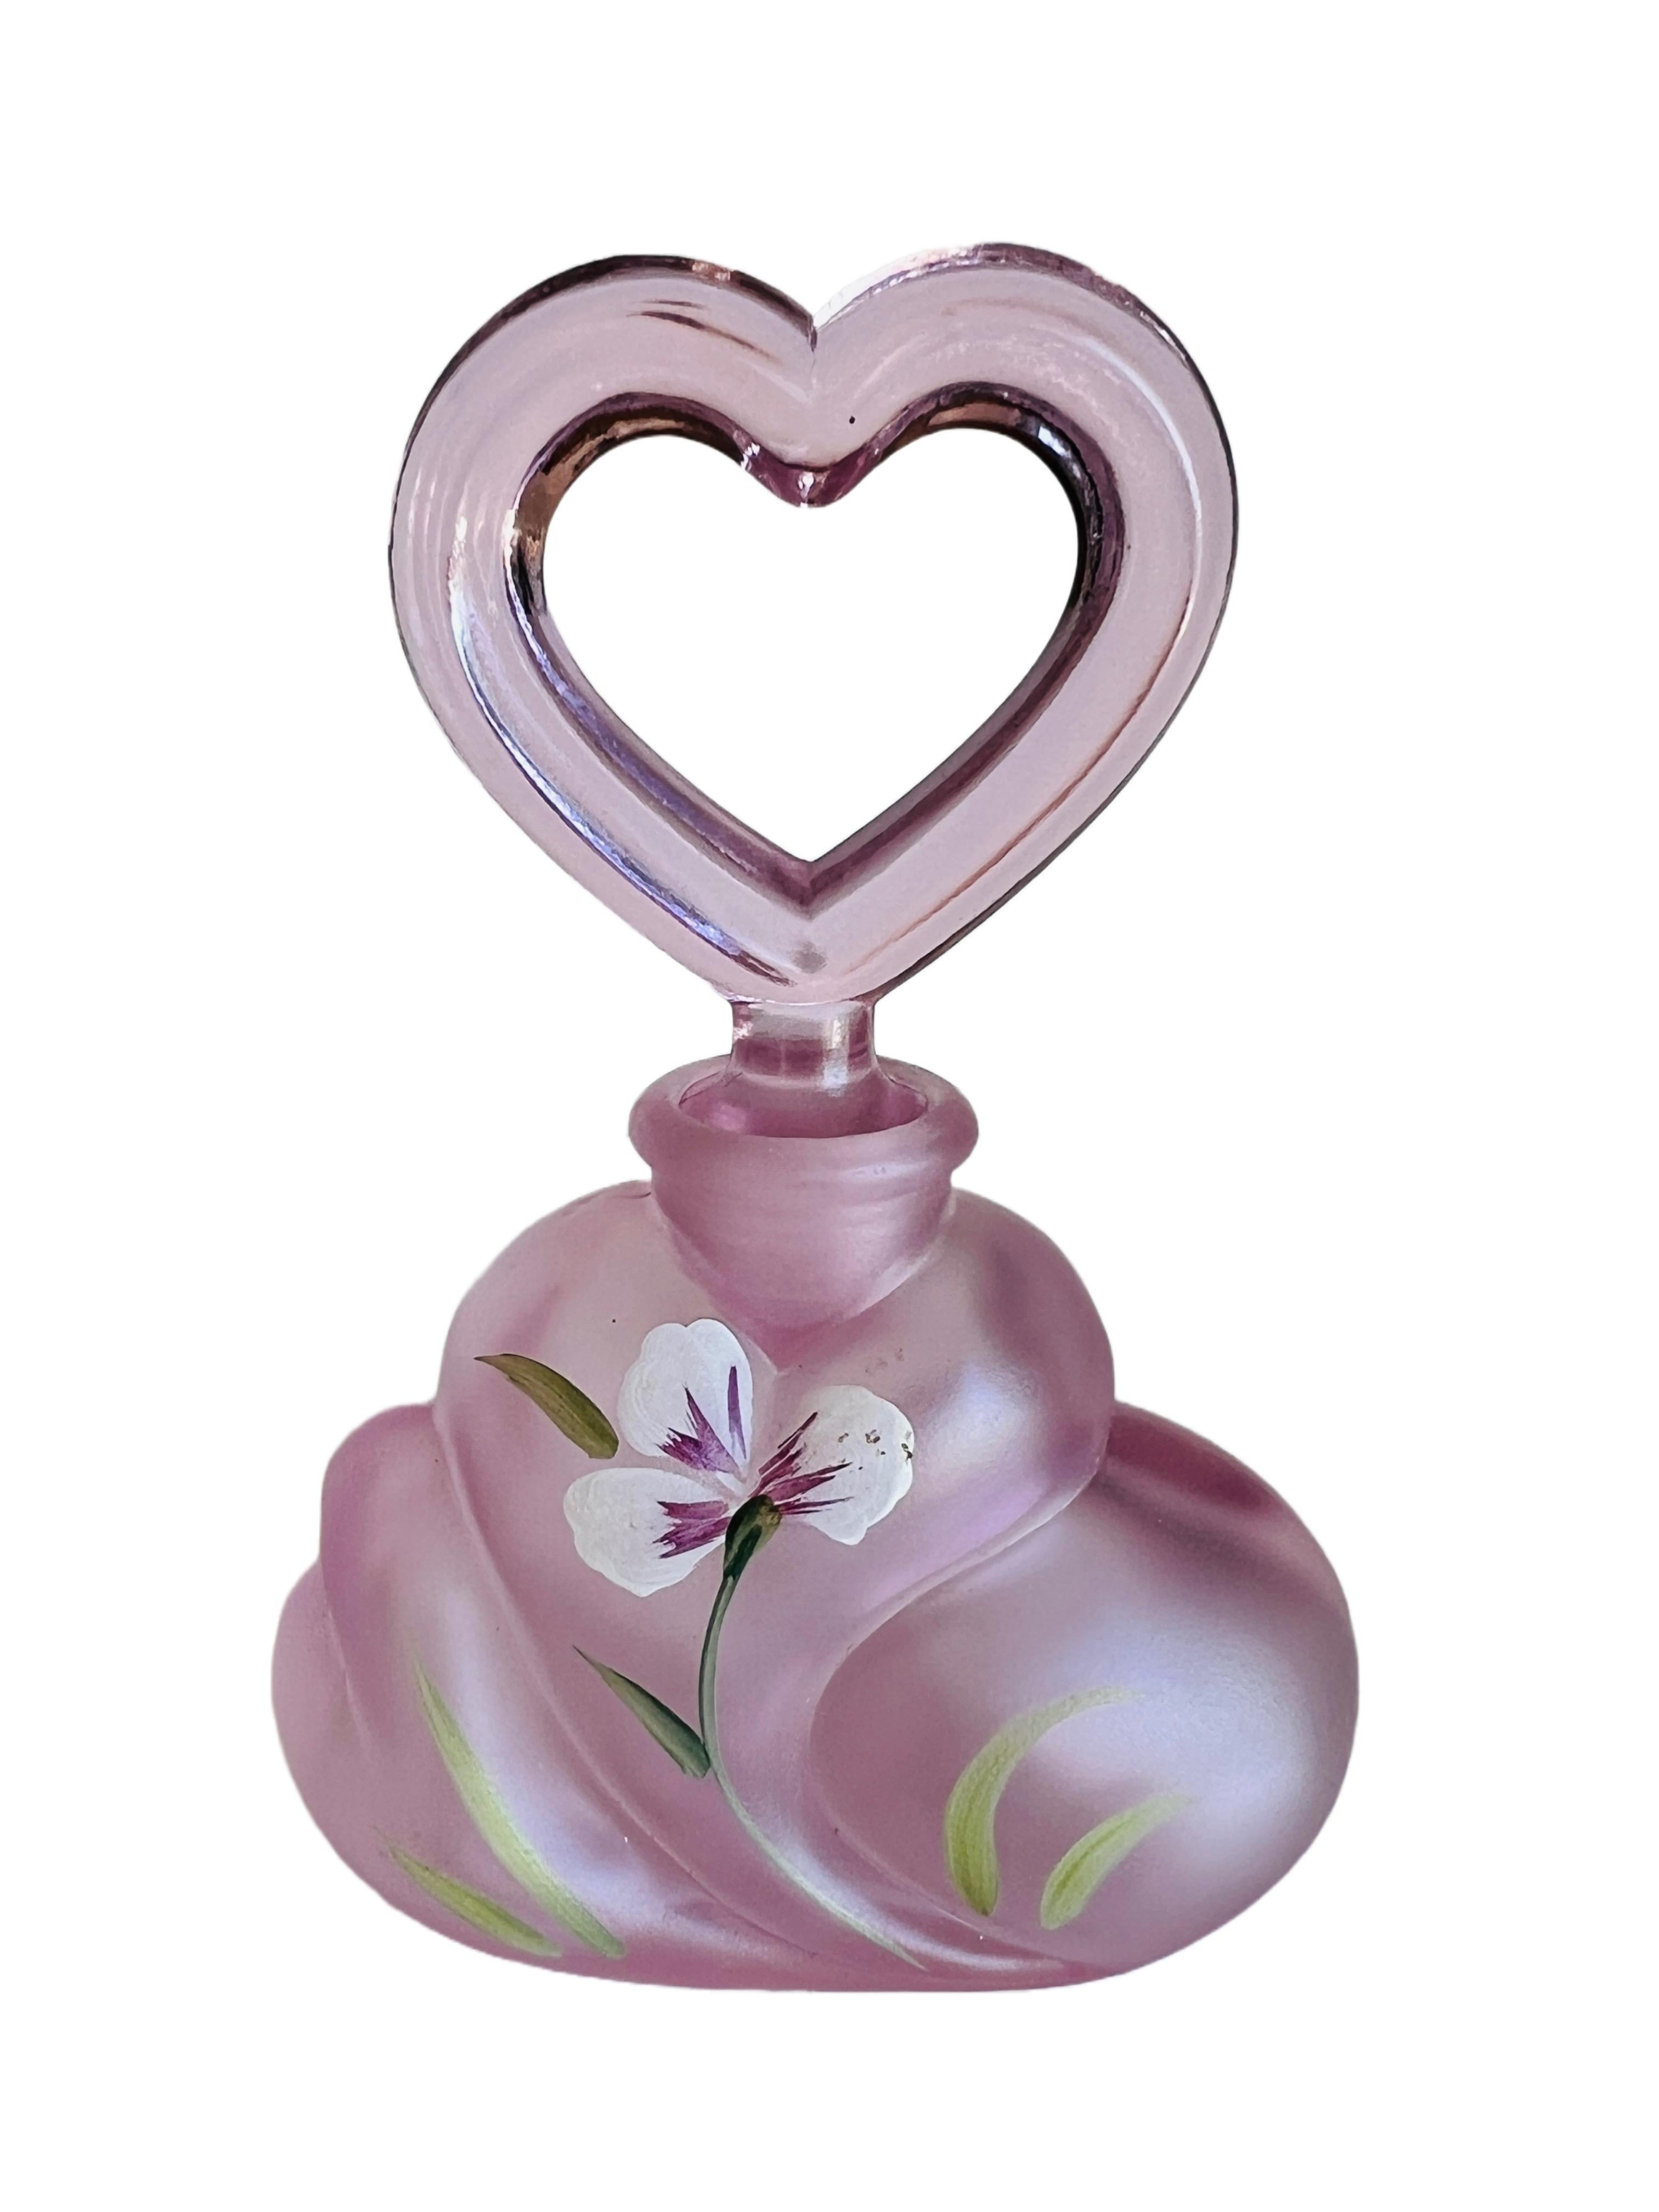 Wunderschöner Parfümflakon aus rosafarbenem Fenton-Glas, verziert mit einem handgemalten Blumendekor und einem charmanten herzförmigen Verschluss. Vom Künstler nummeriert und sowohl von D. Cutshaw als auch von Fenton signiert.

D. Cutshaw ist ein